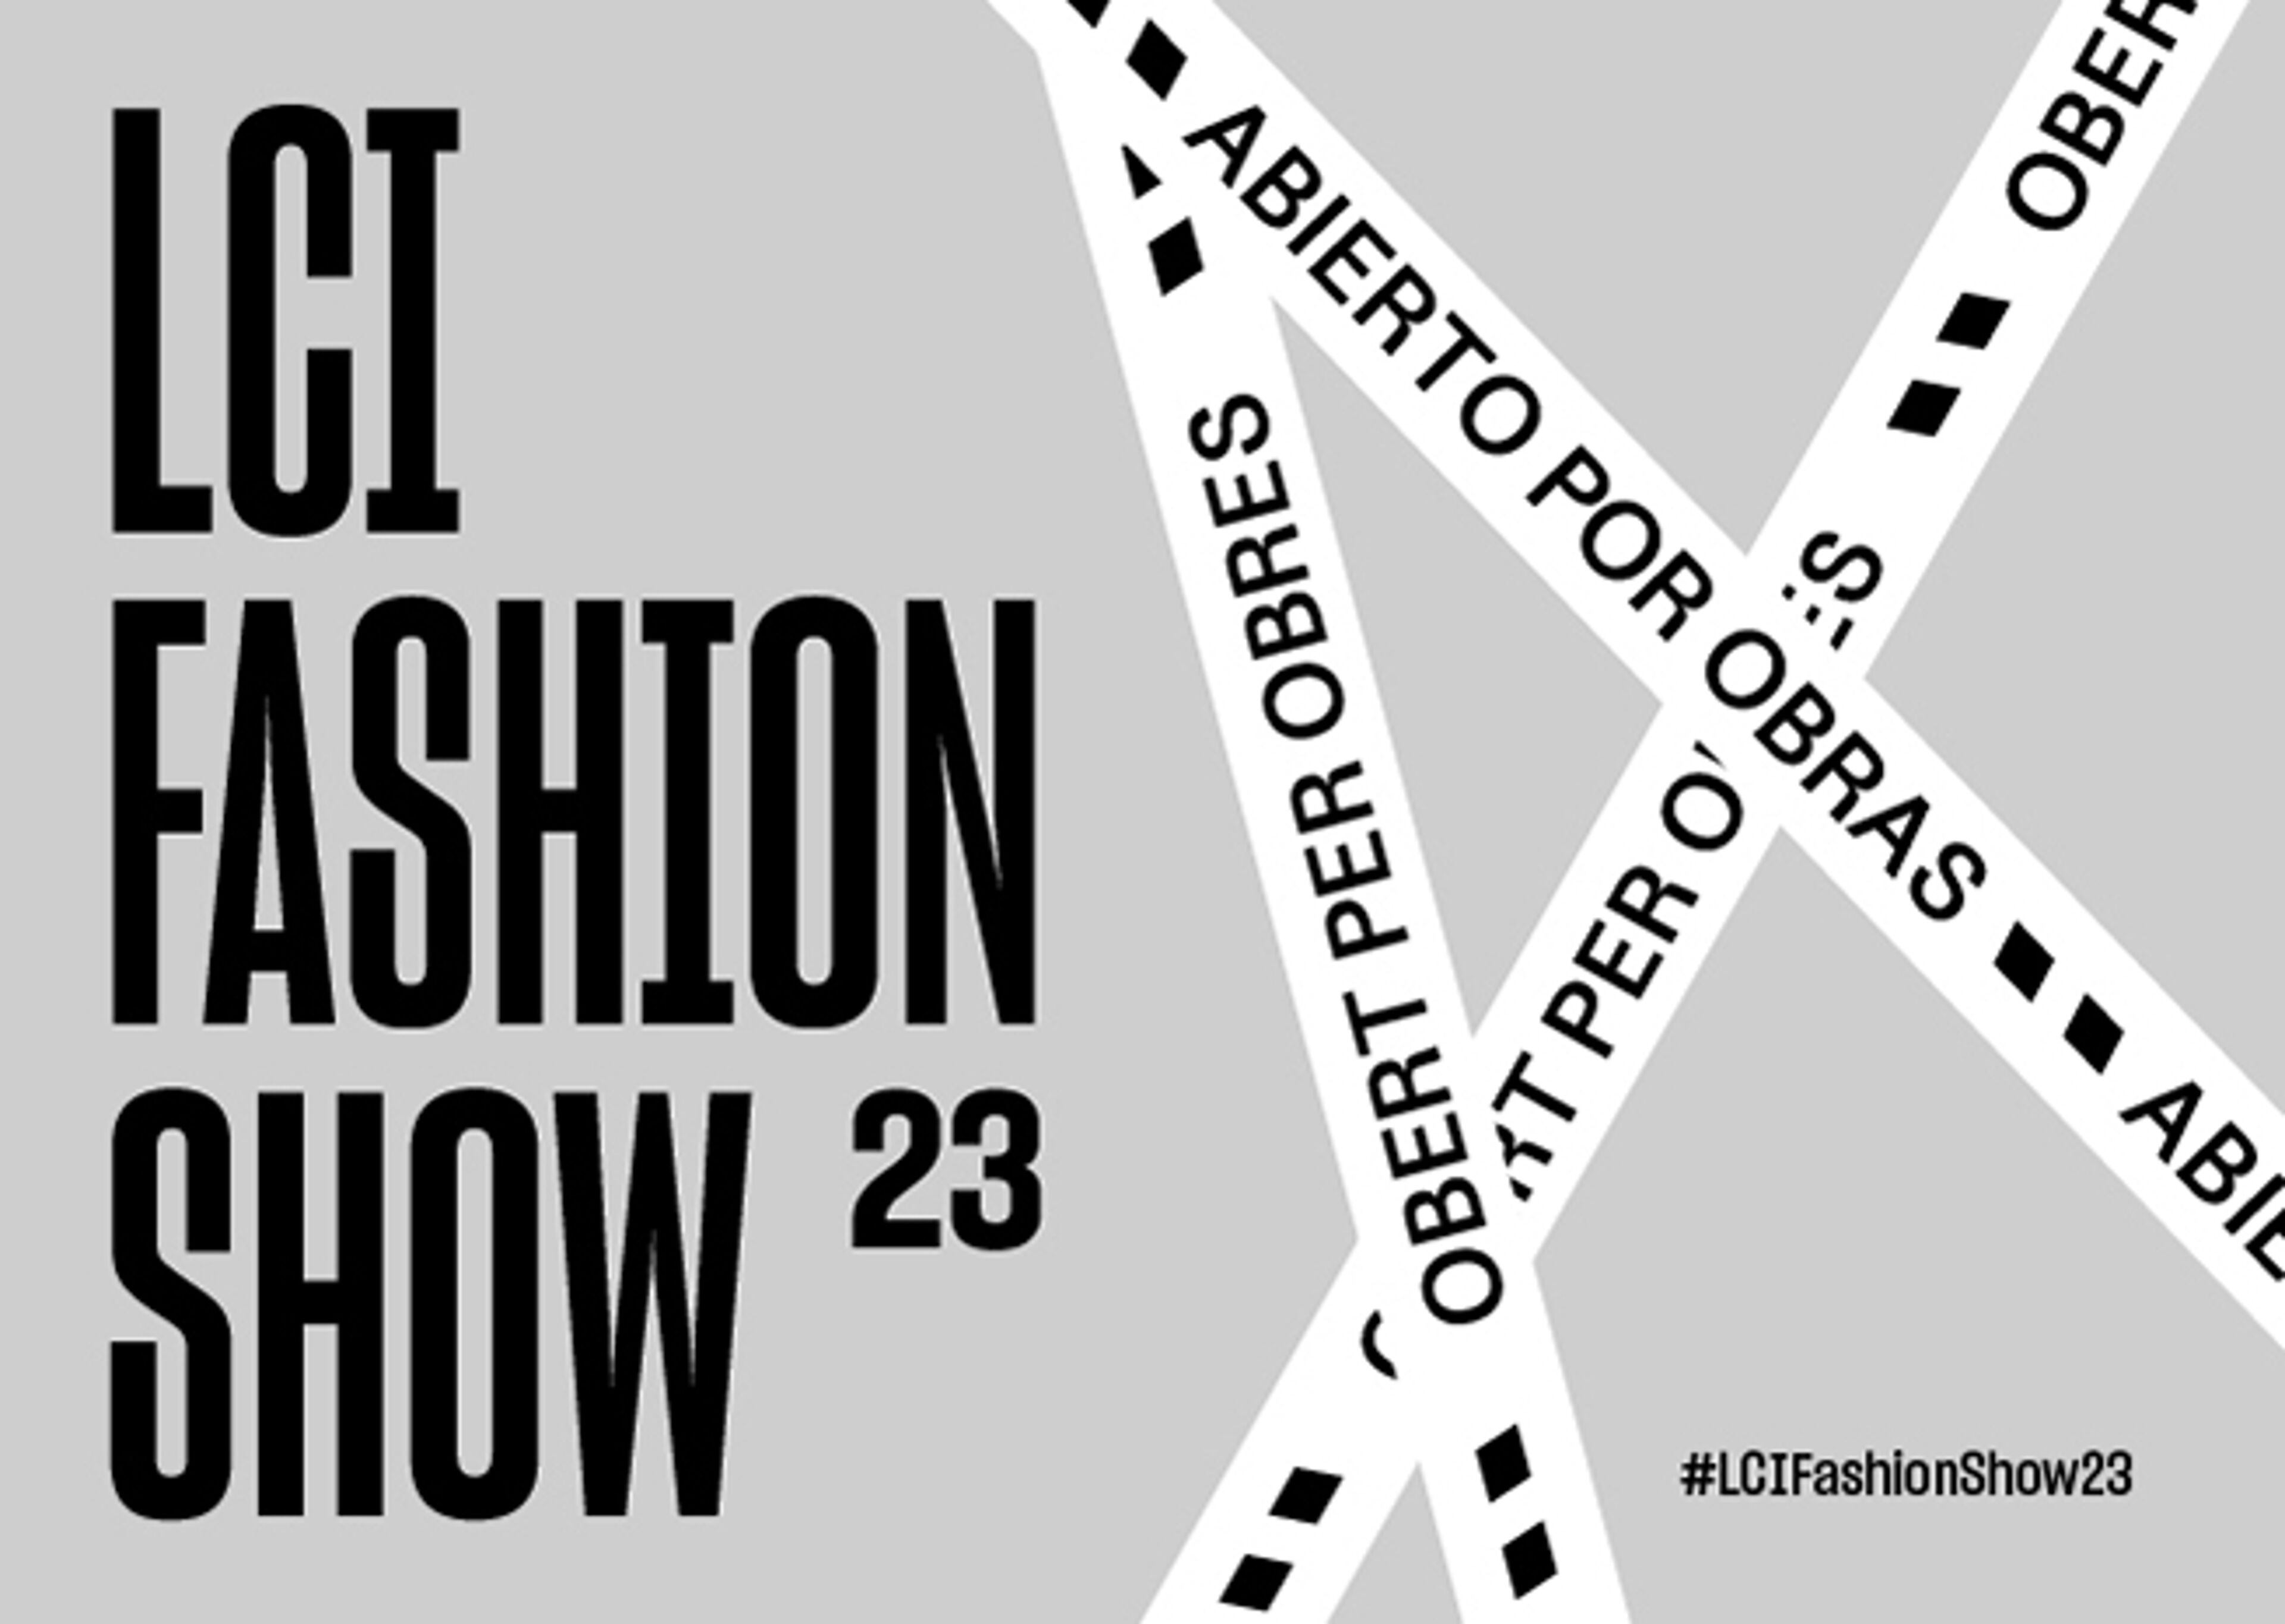 Gràfic promocional per al LCI Fashion Show '23, amb una tipografia en negreta i l'hashtag #LCIFashionShow23 en un disseny dinàmic de cintes creuades.